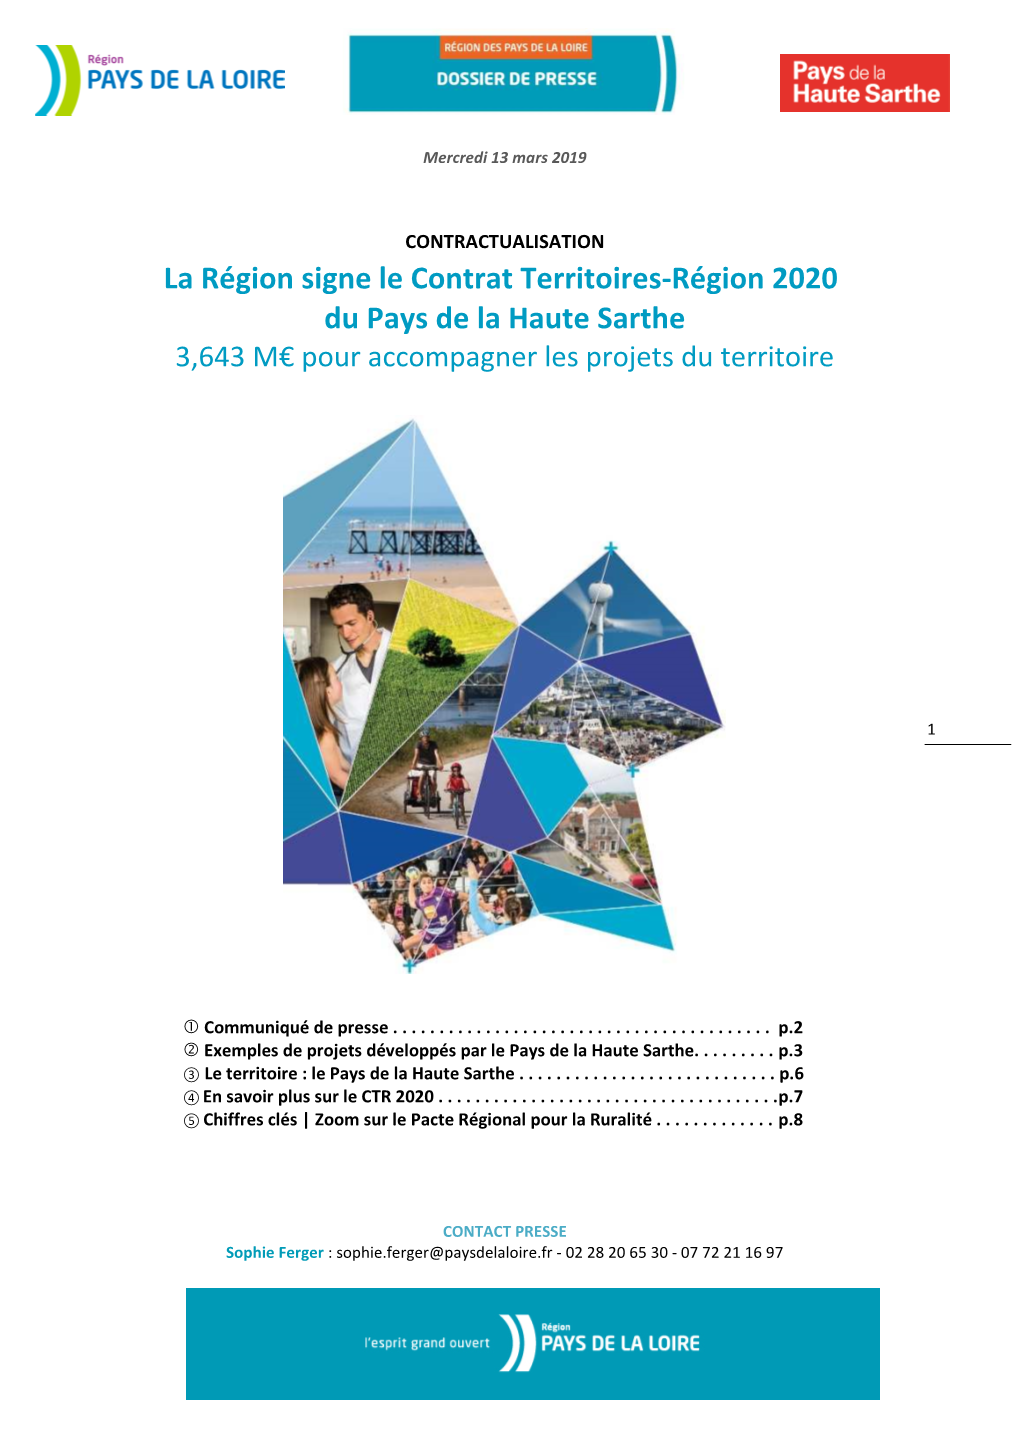 La Région Signe Le Contrat Territoires-Région 2020 Du Pays De La Haute Sarthe 3,643 M€ Pour Accompagner Les Projets Du Territoire